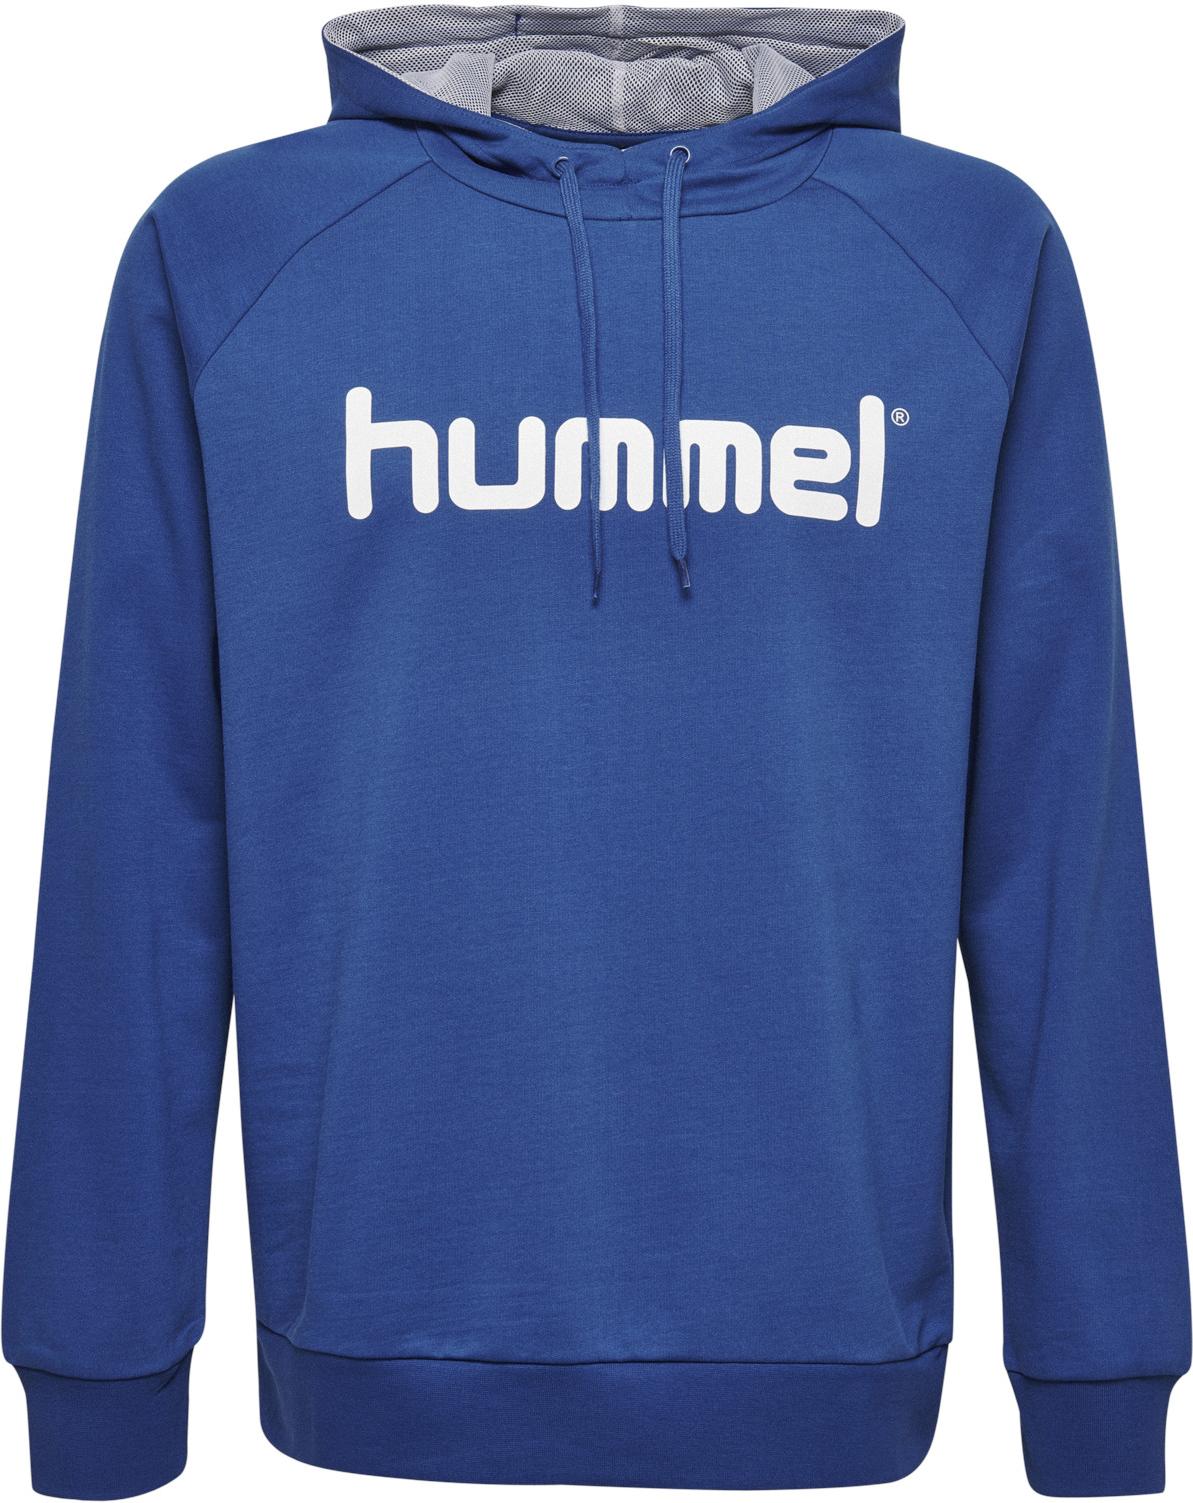 Φούτερ-Jacket με κουκούλα hummel cotton logo hoody 45